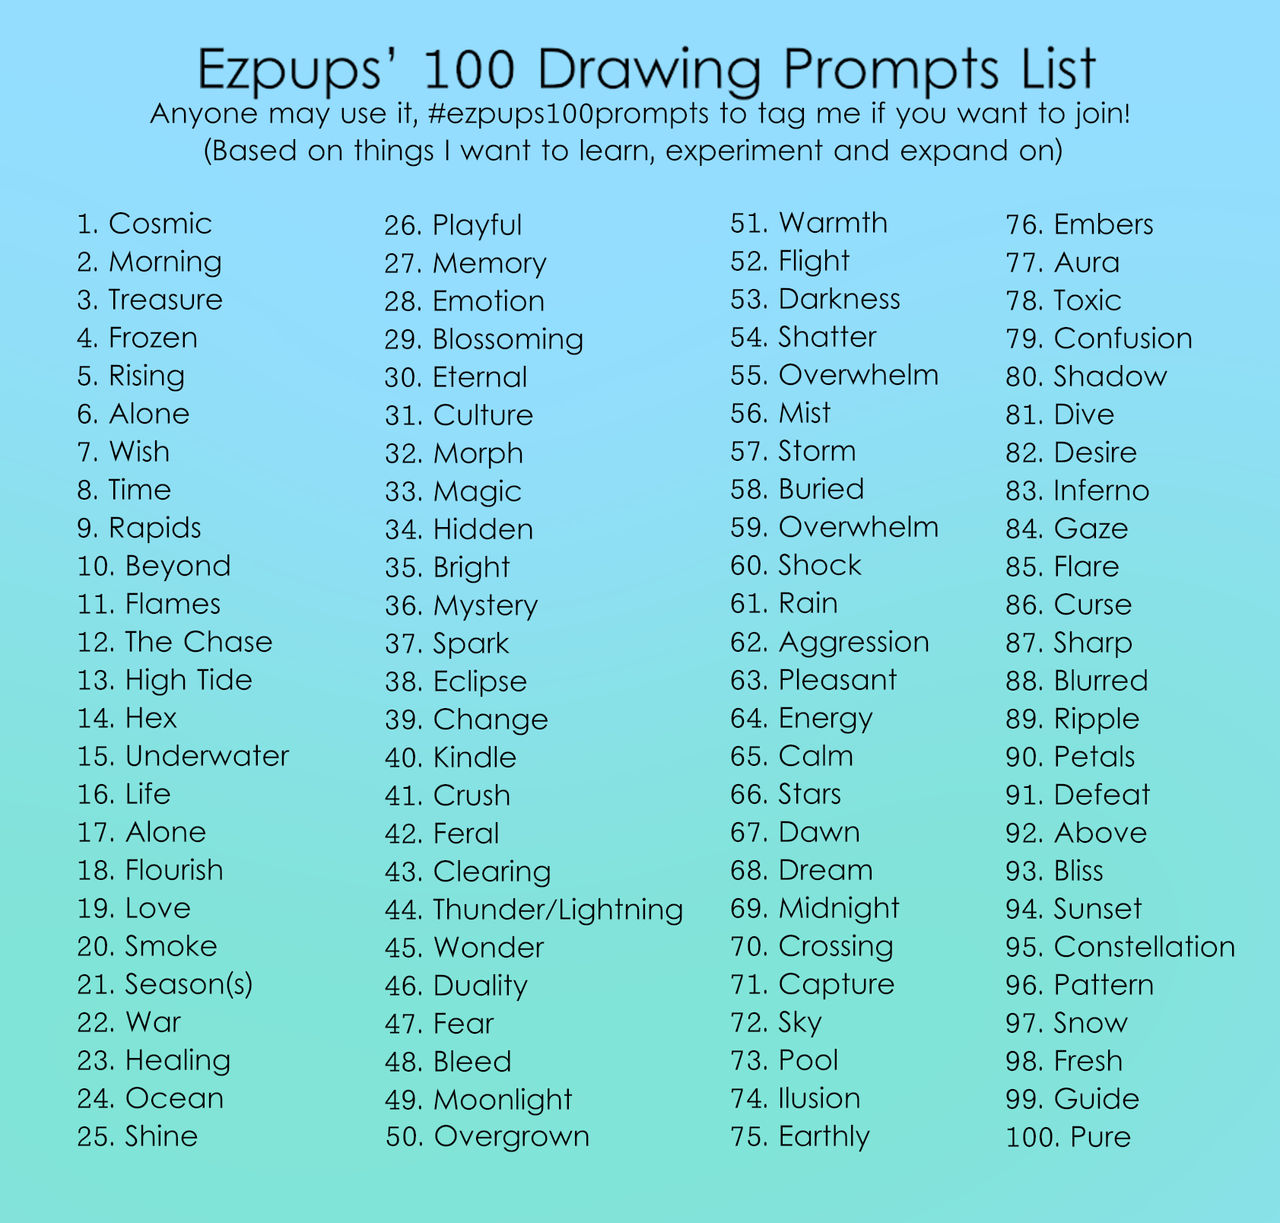 ezpups 100 Prompts List by ezpups on DeviantArt